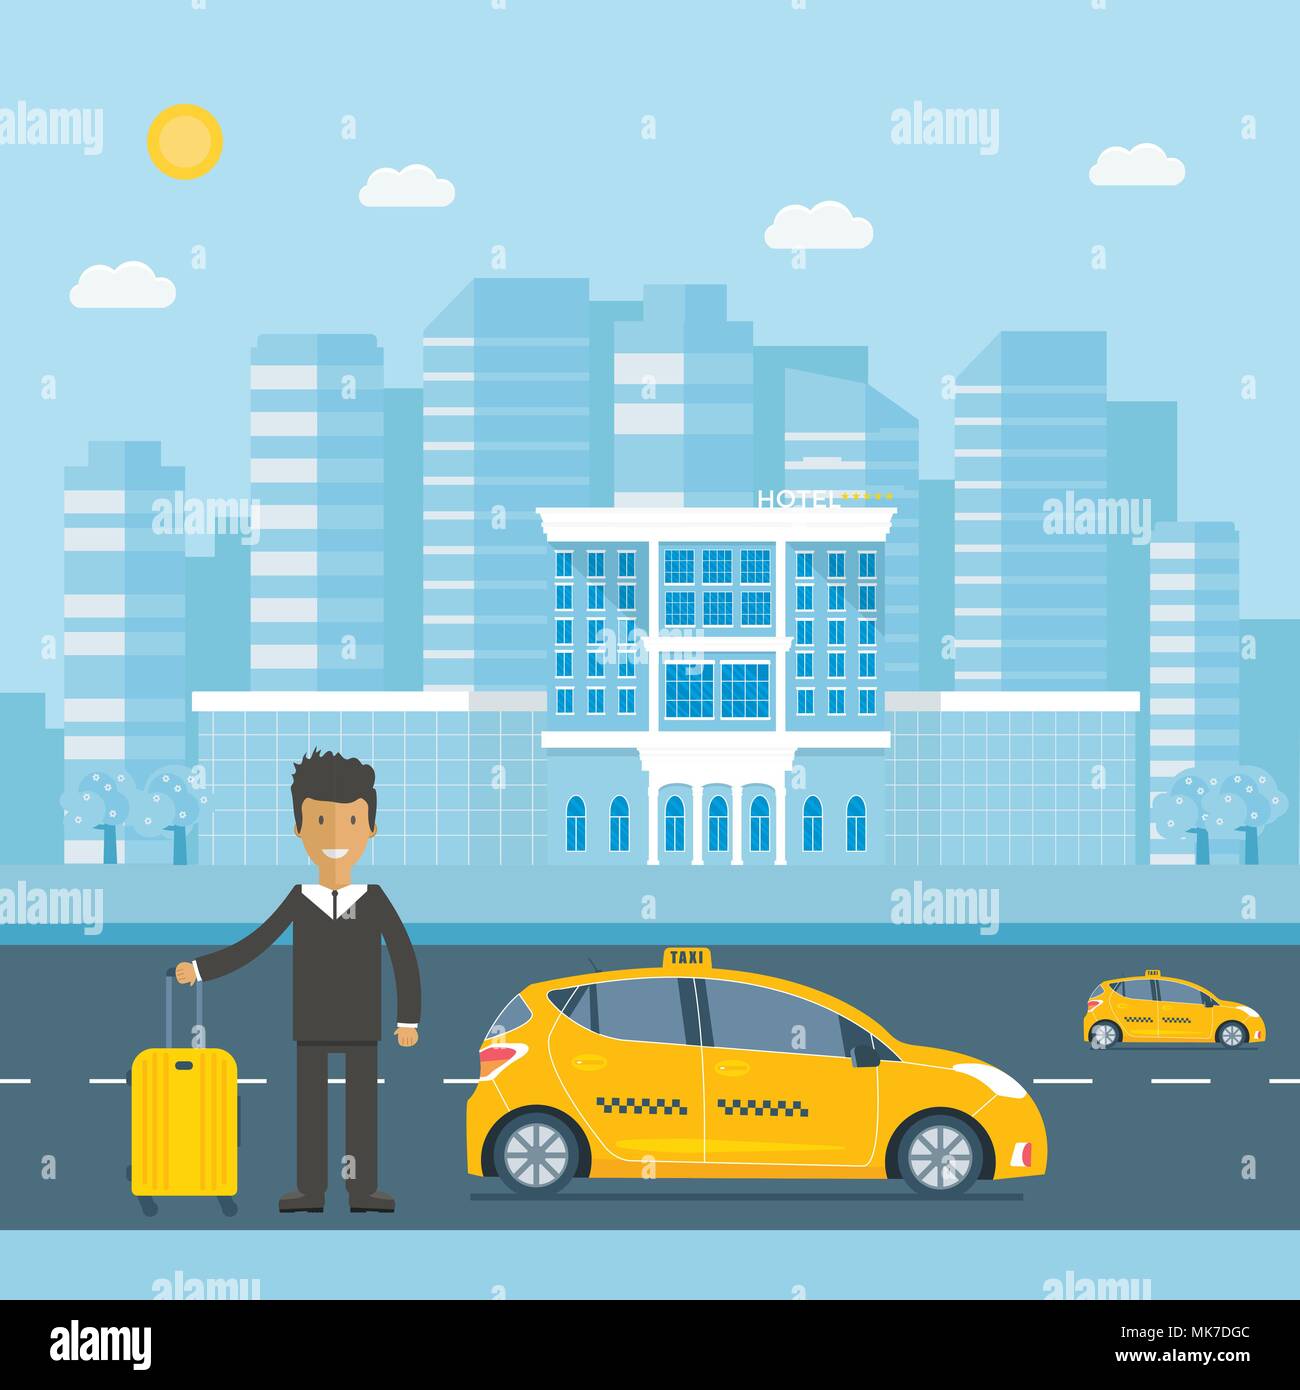 Maschine gelbes Taxi mit Fahrer, Gepäck, Hotel in der Stadt. Öffentliches Taxi Service Konzept. Flache Vector Illustration. Stock Vektor